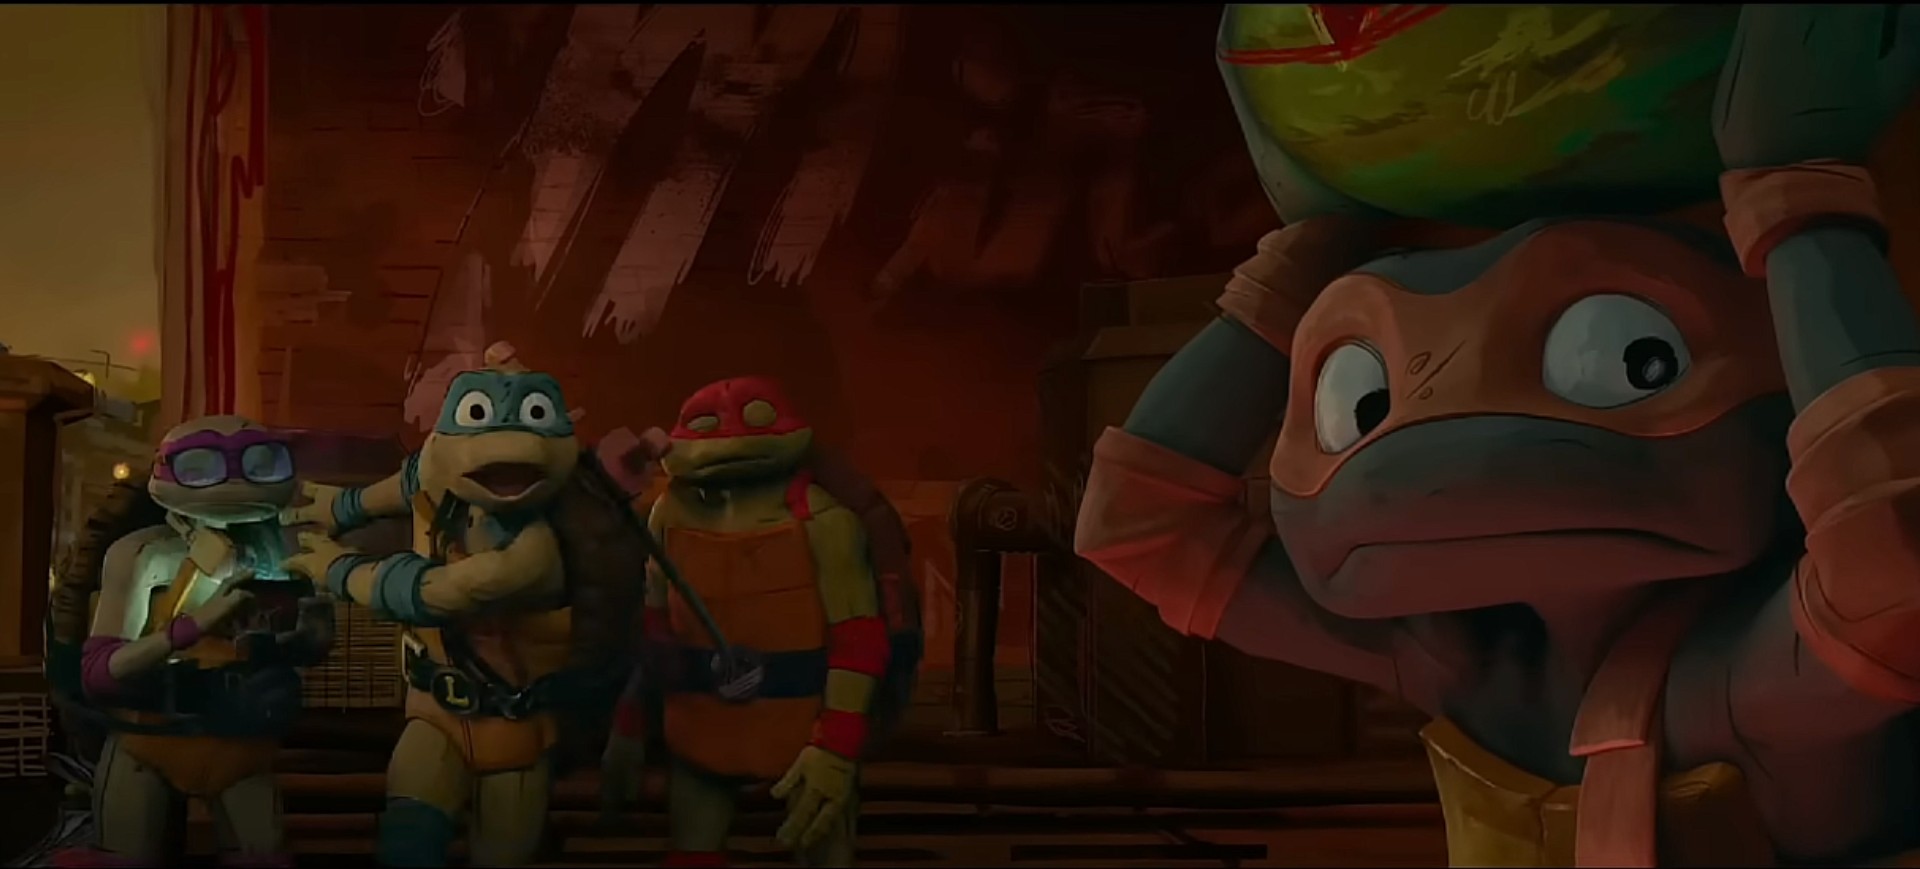 Cena da animação das novas Tartarugas Ninja, da Paramount Pictures